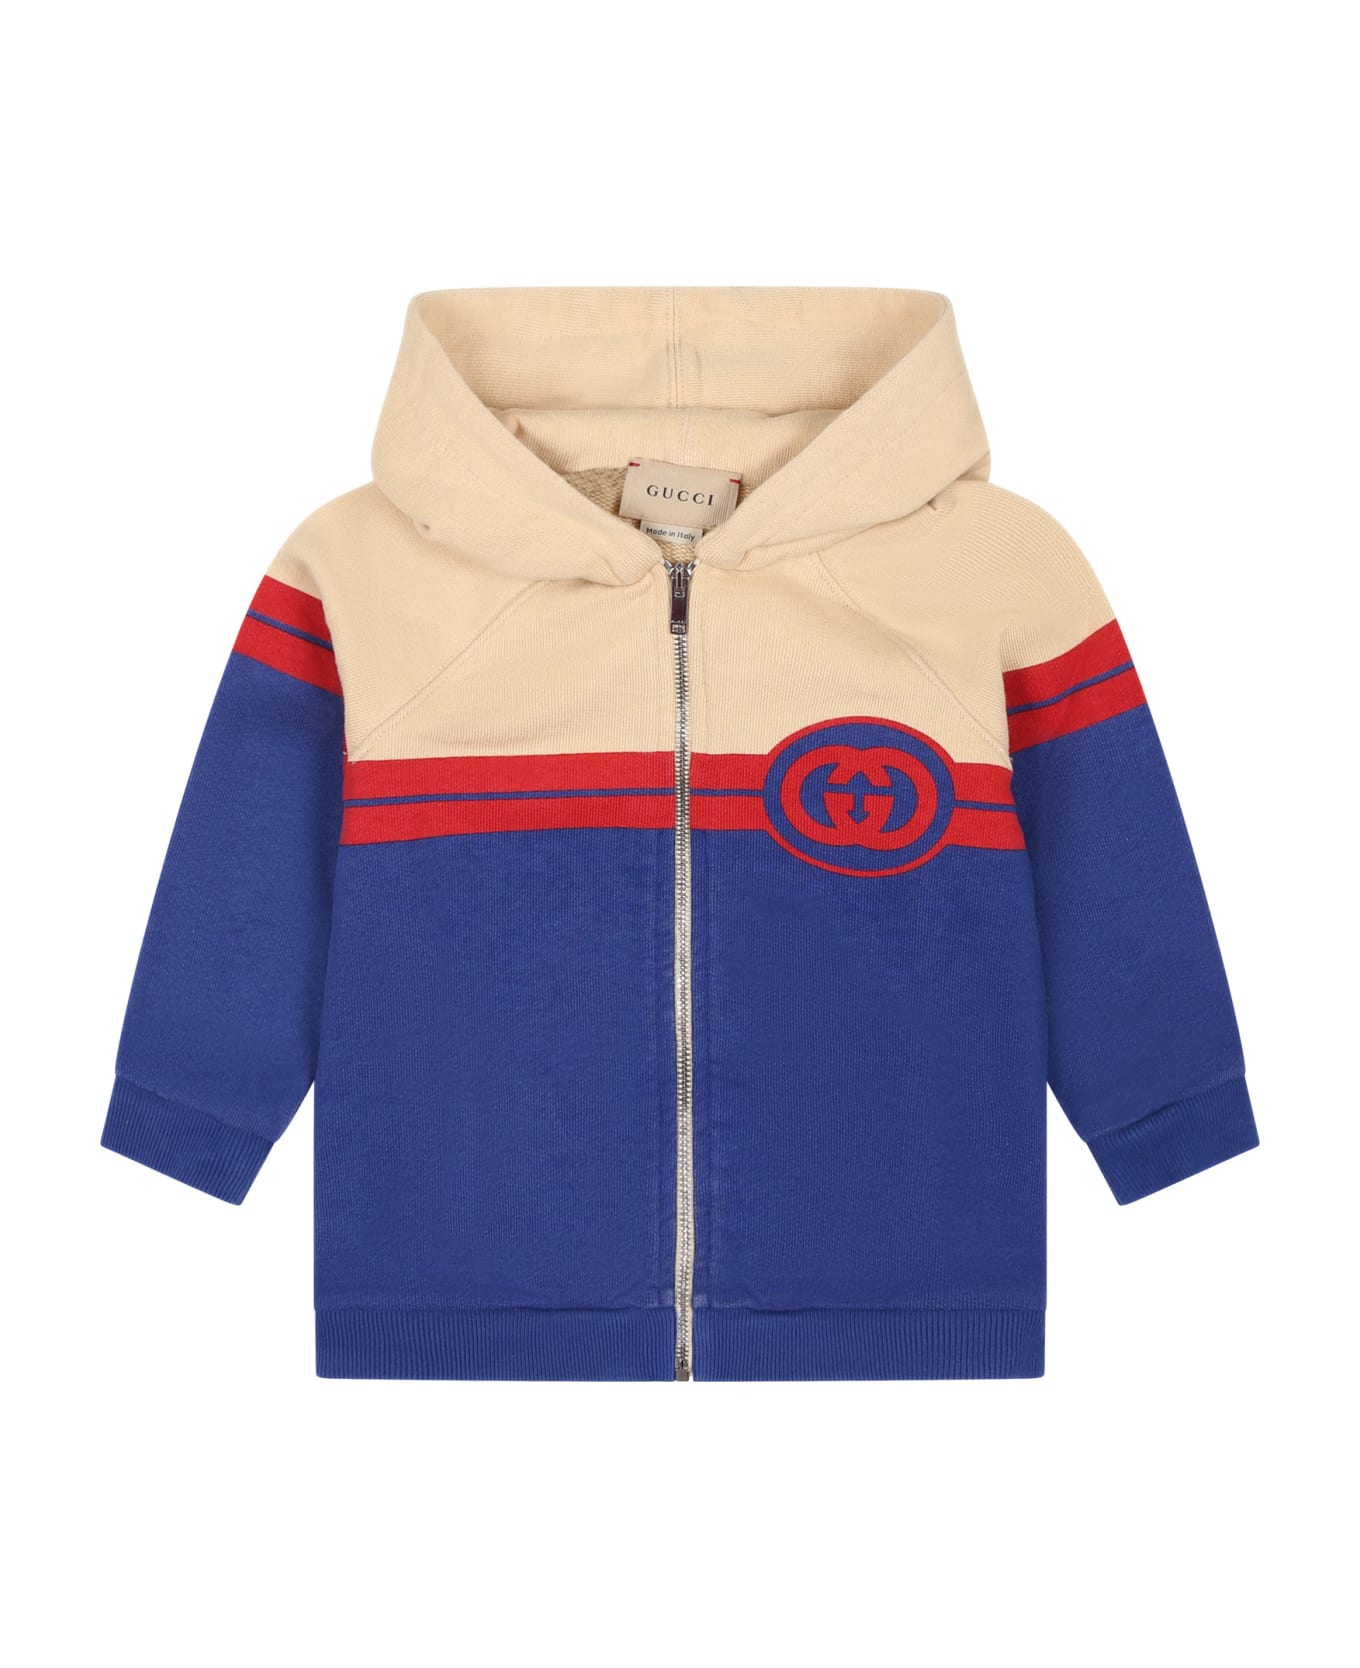 Gucci Multicolor Sweatshirt For Baby Boy With Logo - Multicolor